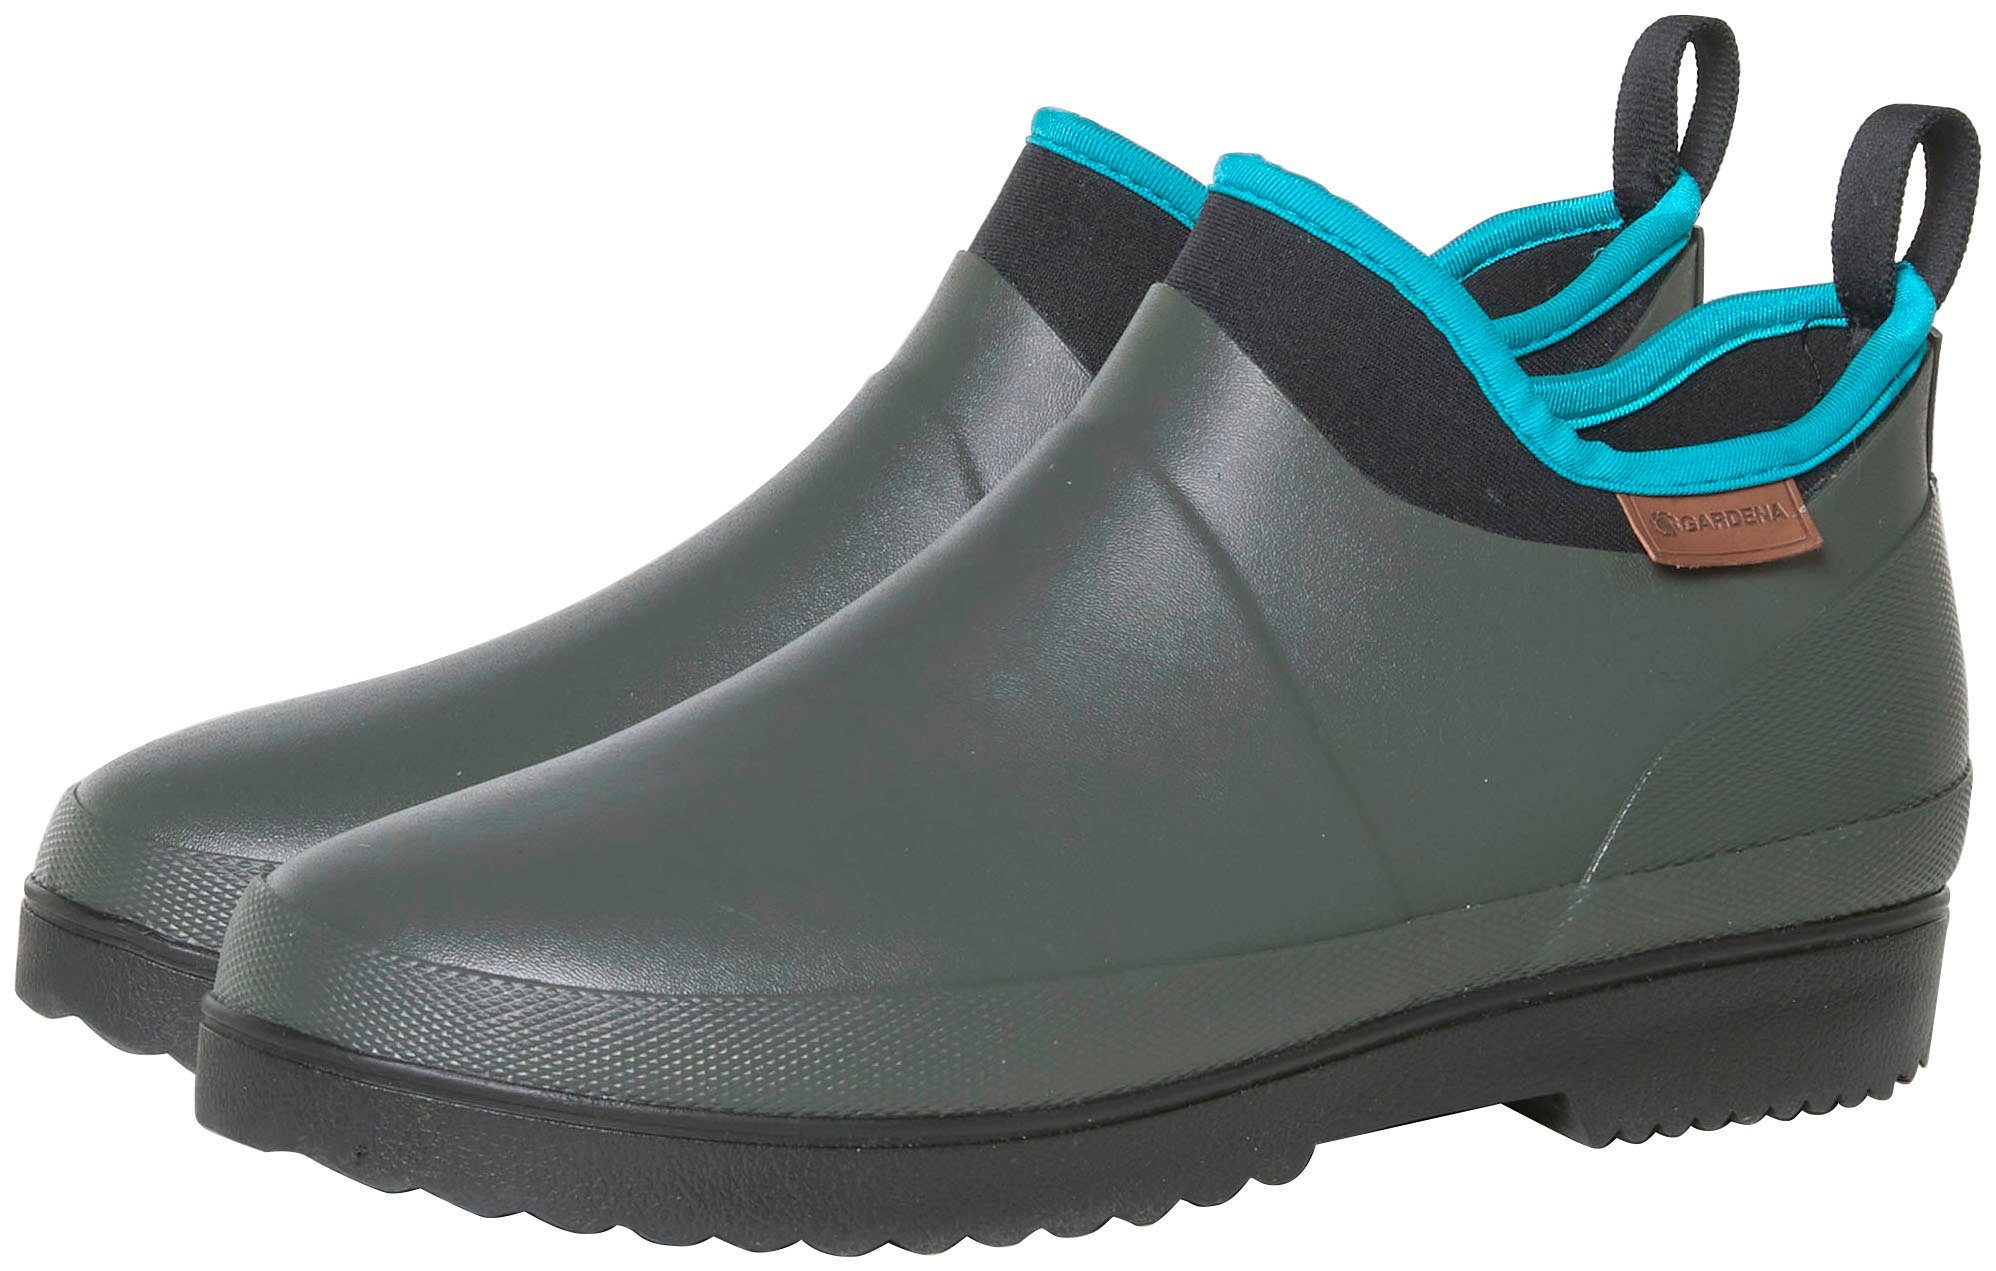 GARDENA Rubber Boot Low Cut Gummistiefelette Ankle-Boot-Schaft mit  Slip-in-Funktion, GARDENA Unisex-Boots im Gardening-Design